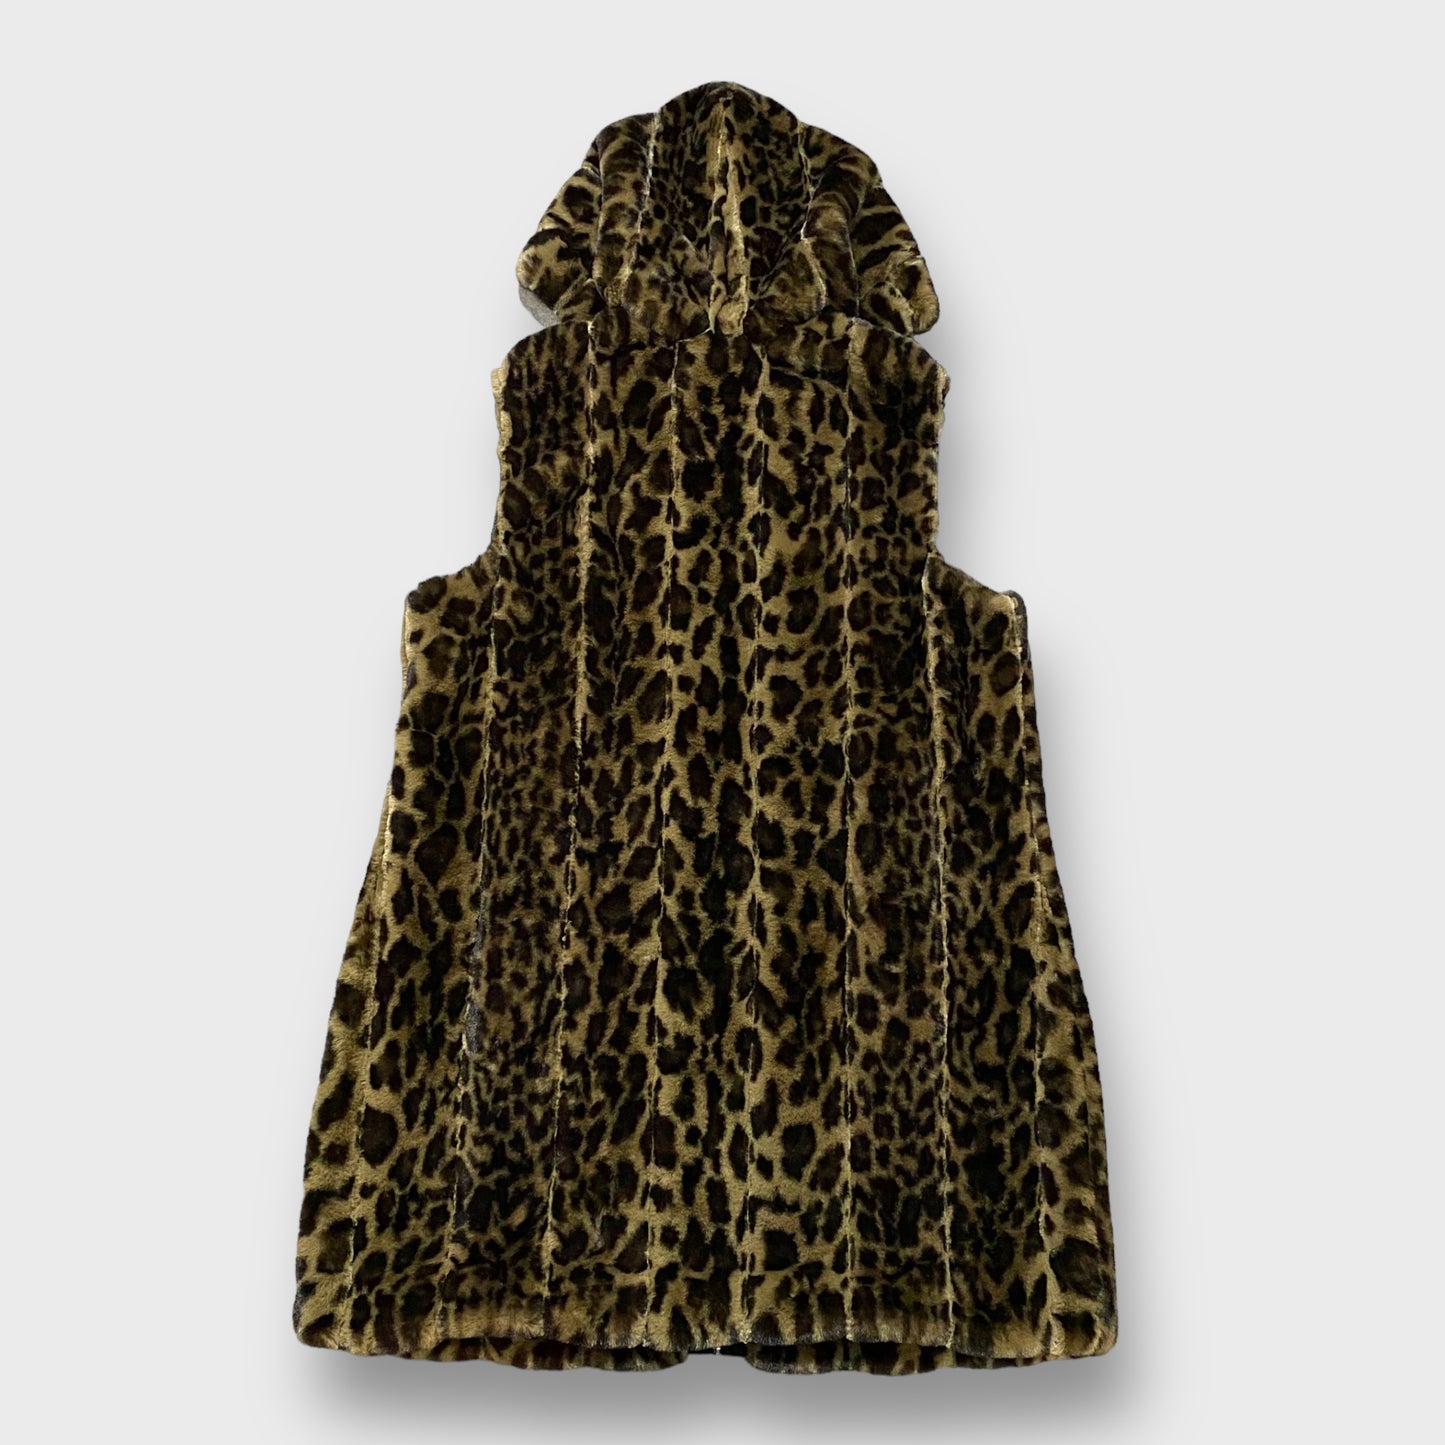 Leopard pattern hooded fur vest